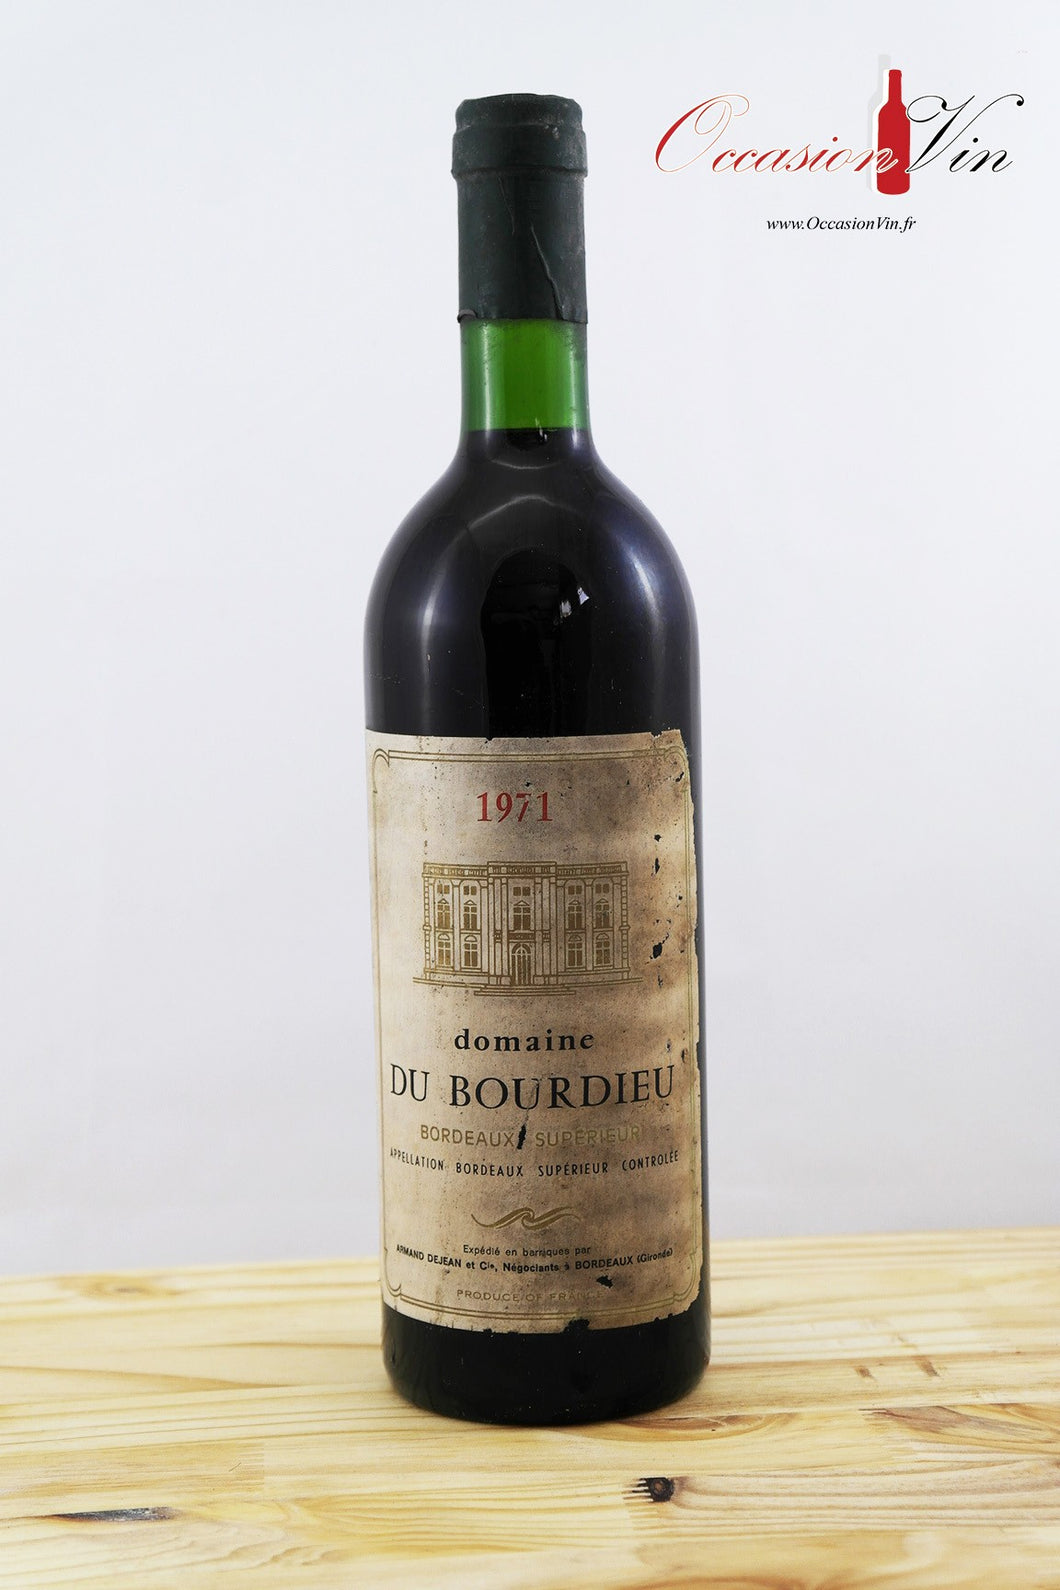 Domaine du Bourdieu Vin 1971